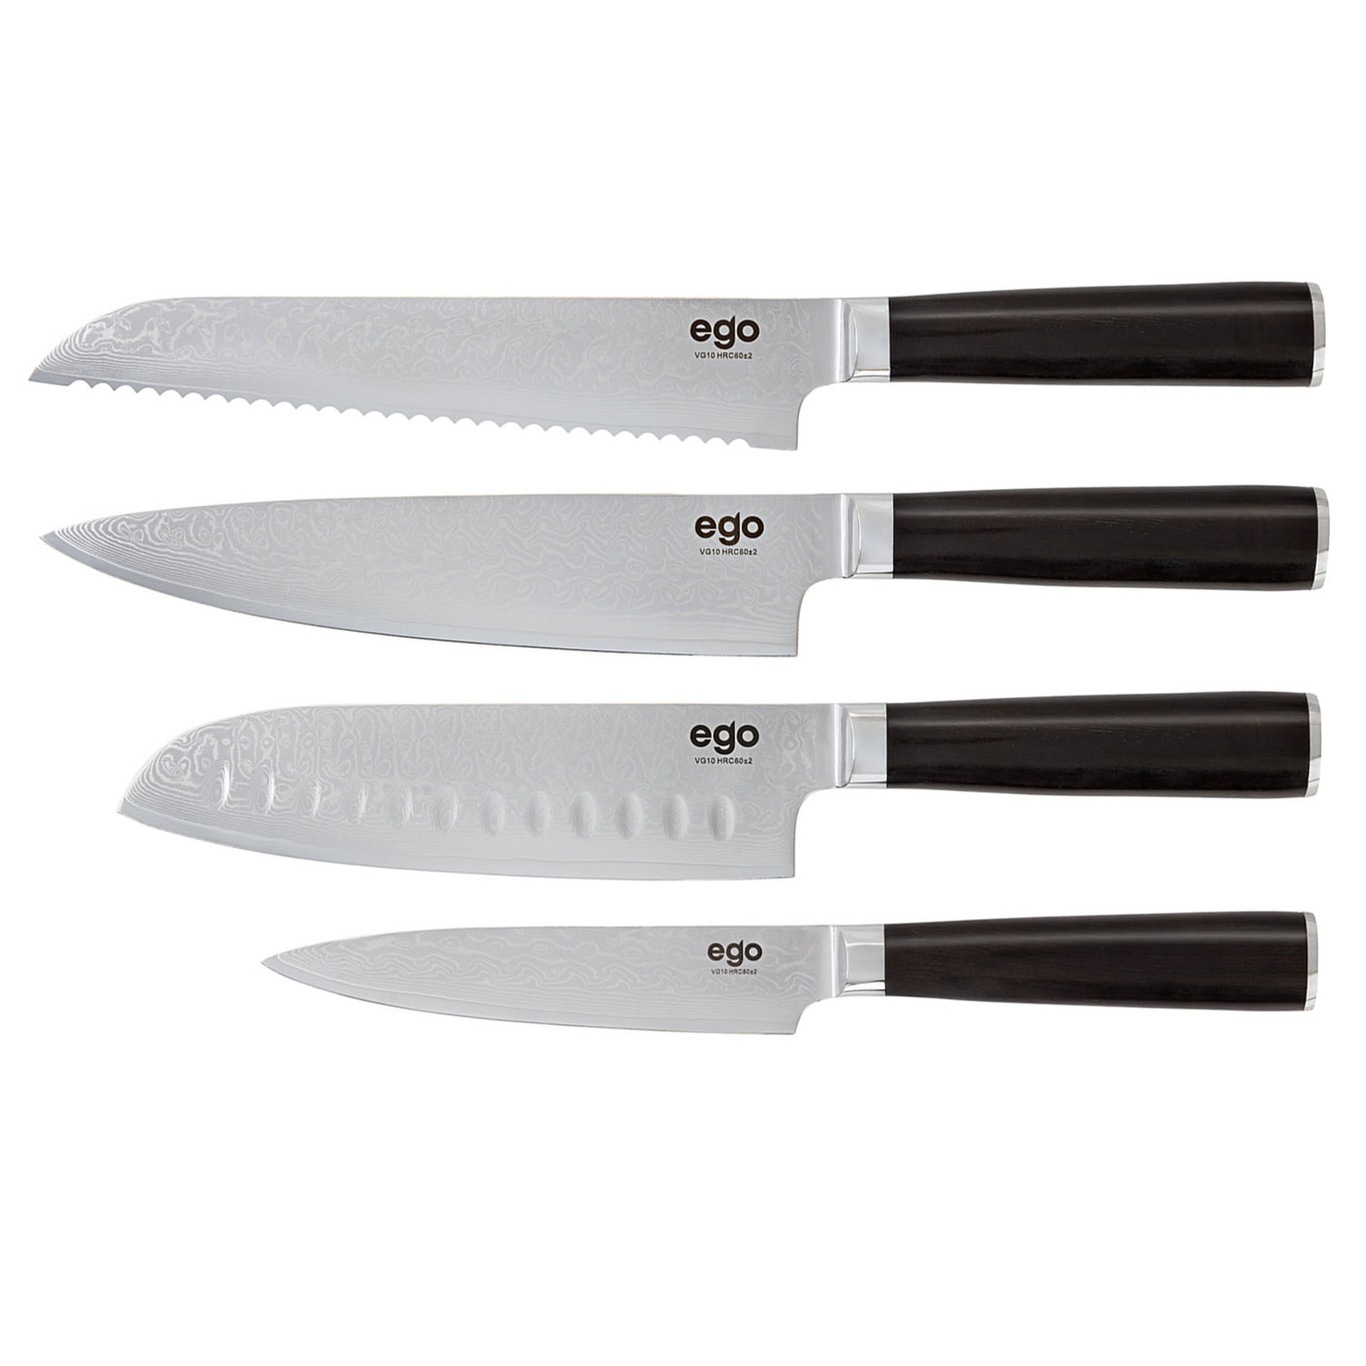 VG-10 Knife set 4 Parts